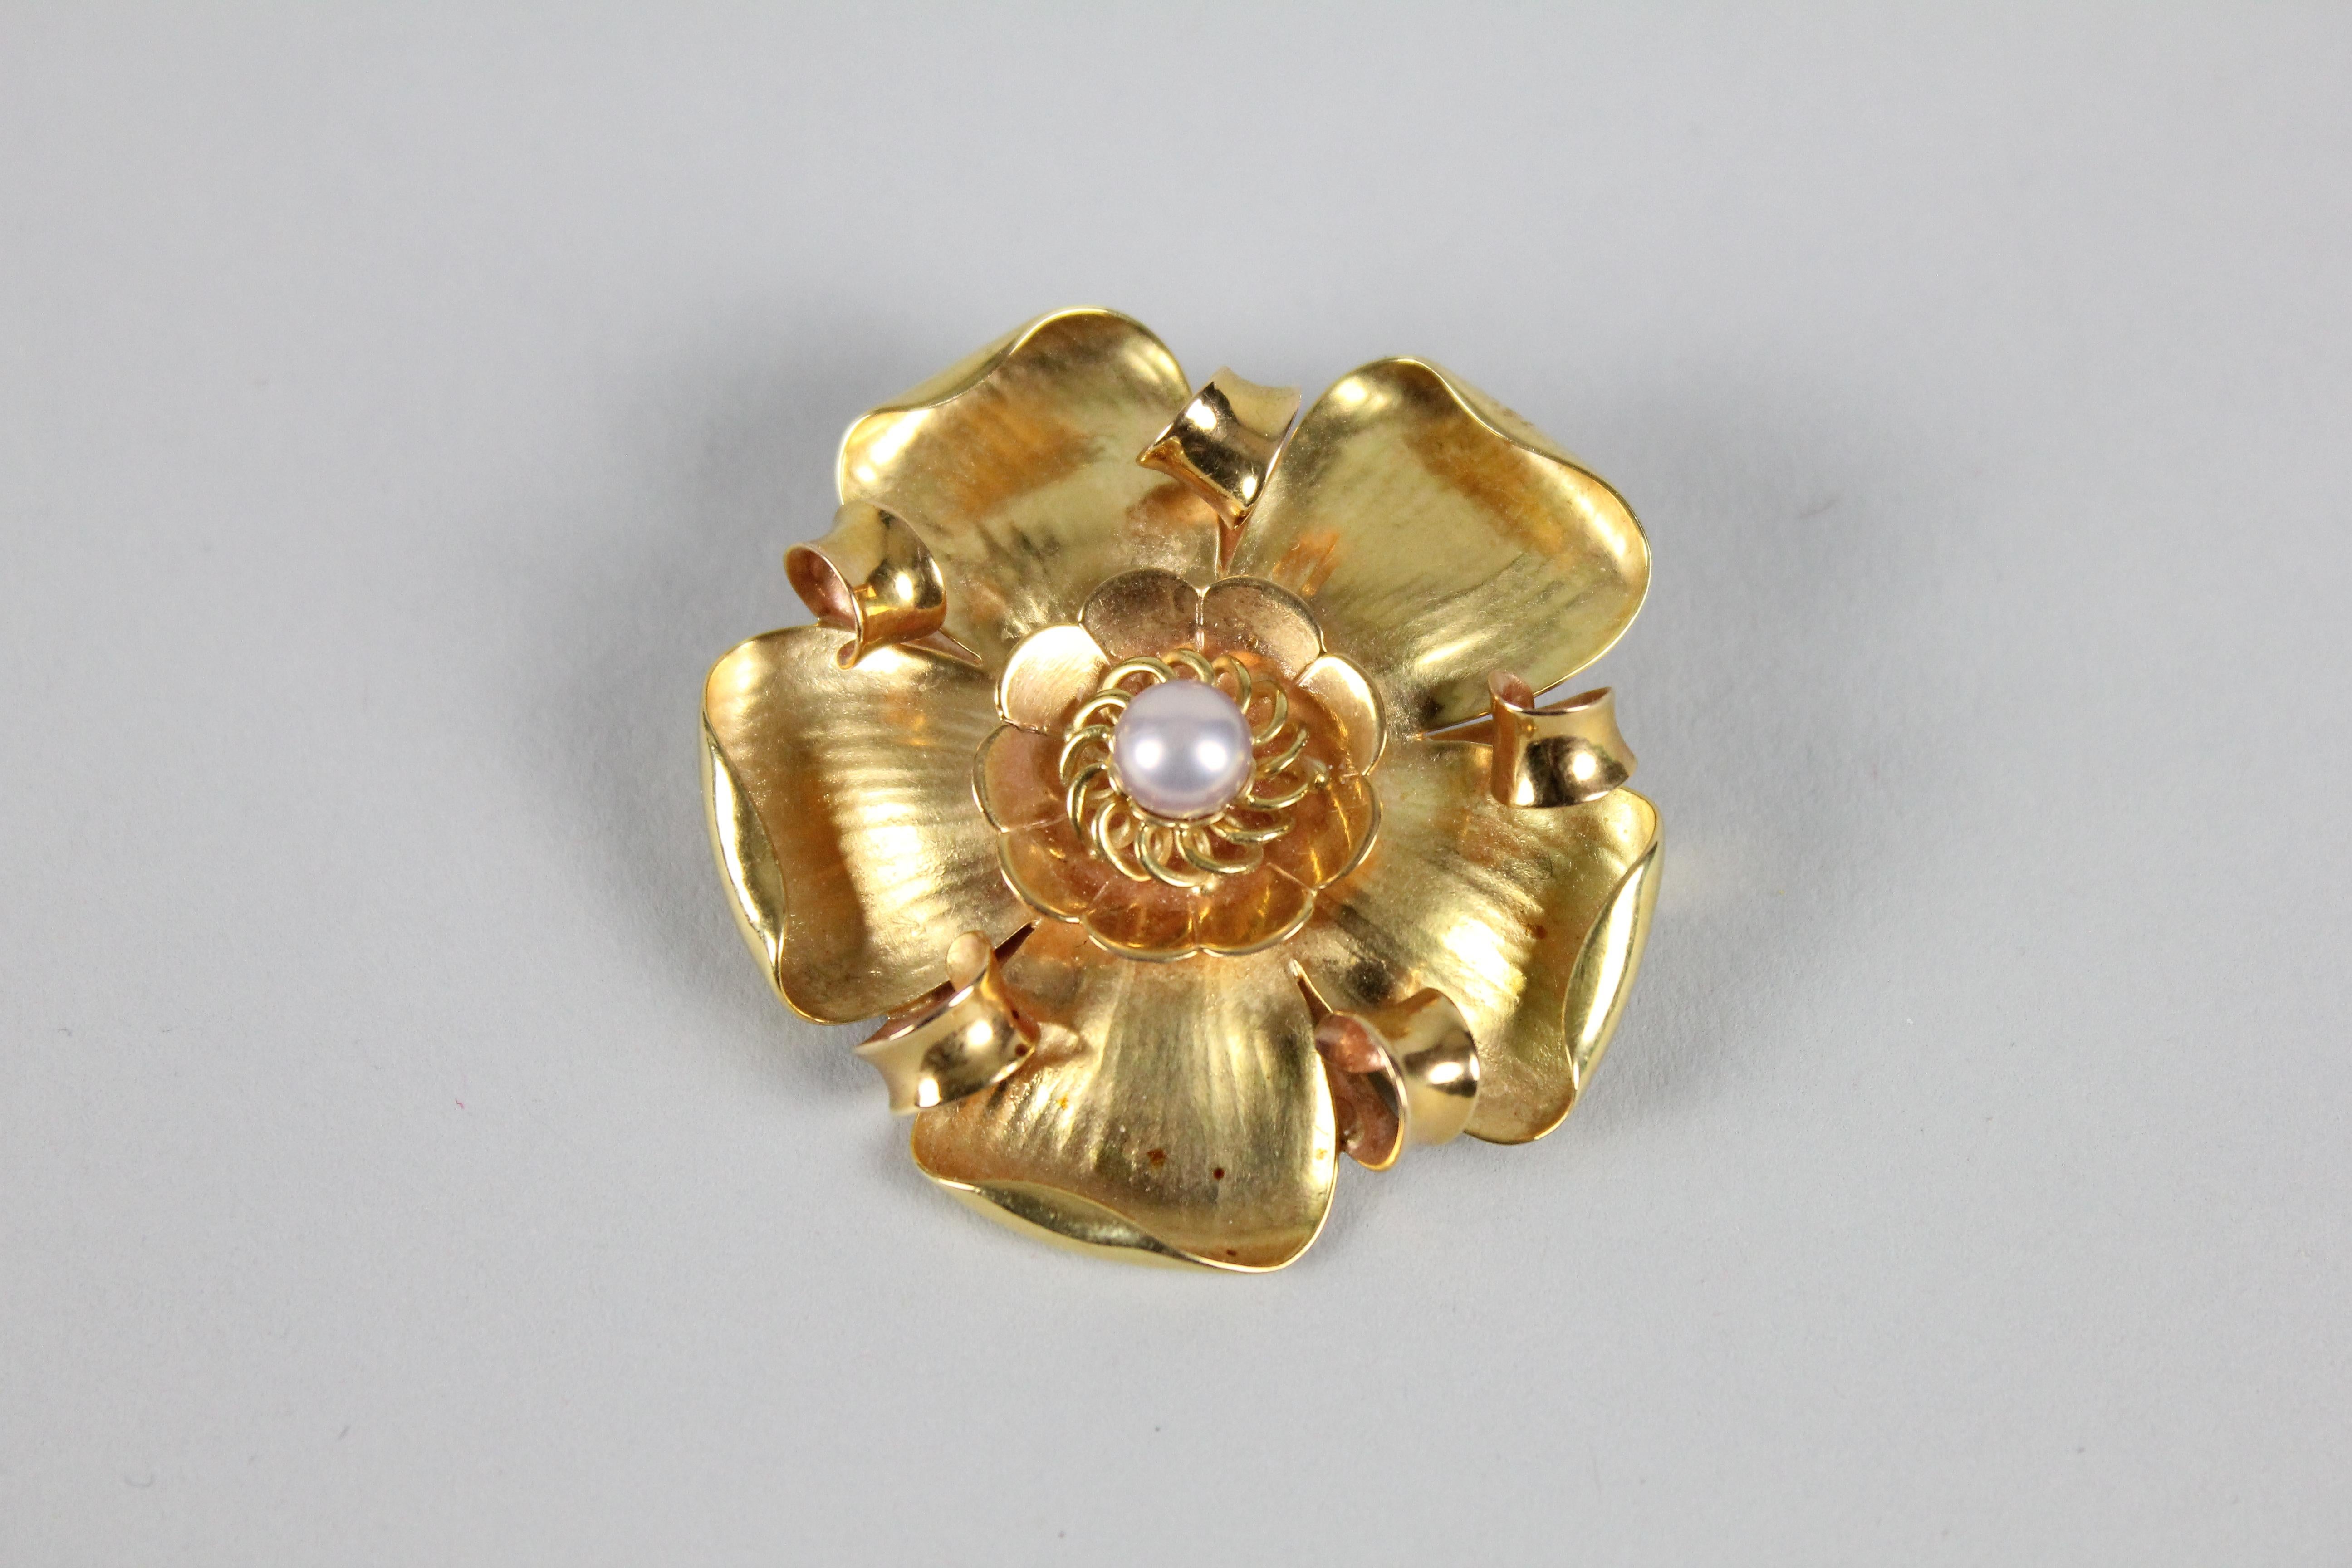 Wunderschöne Brosche aus 18 Karat Gold, die eine Blume darstellt.
Hergestellt von Erik Fleming (1894-1954) für Borgila.
18k Gold zusammen mit einer Perle.
Toller Zustand, keine Probleme.
Durchmesser 4,5cm (in 1,78)